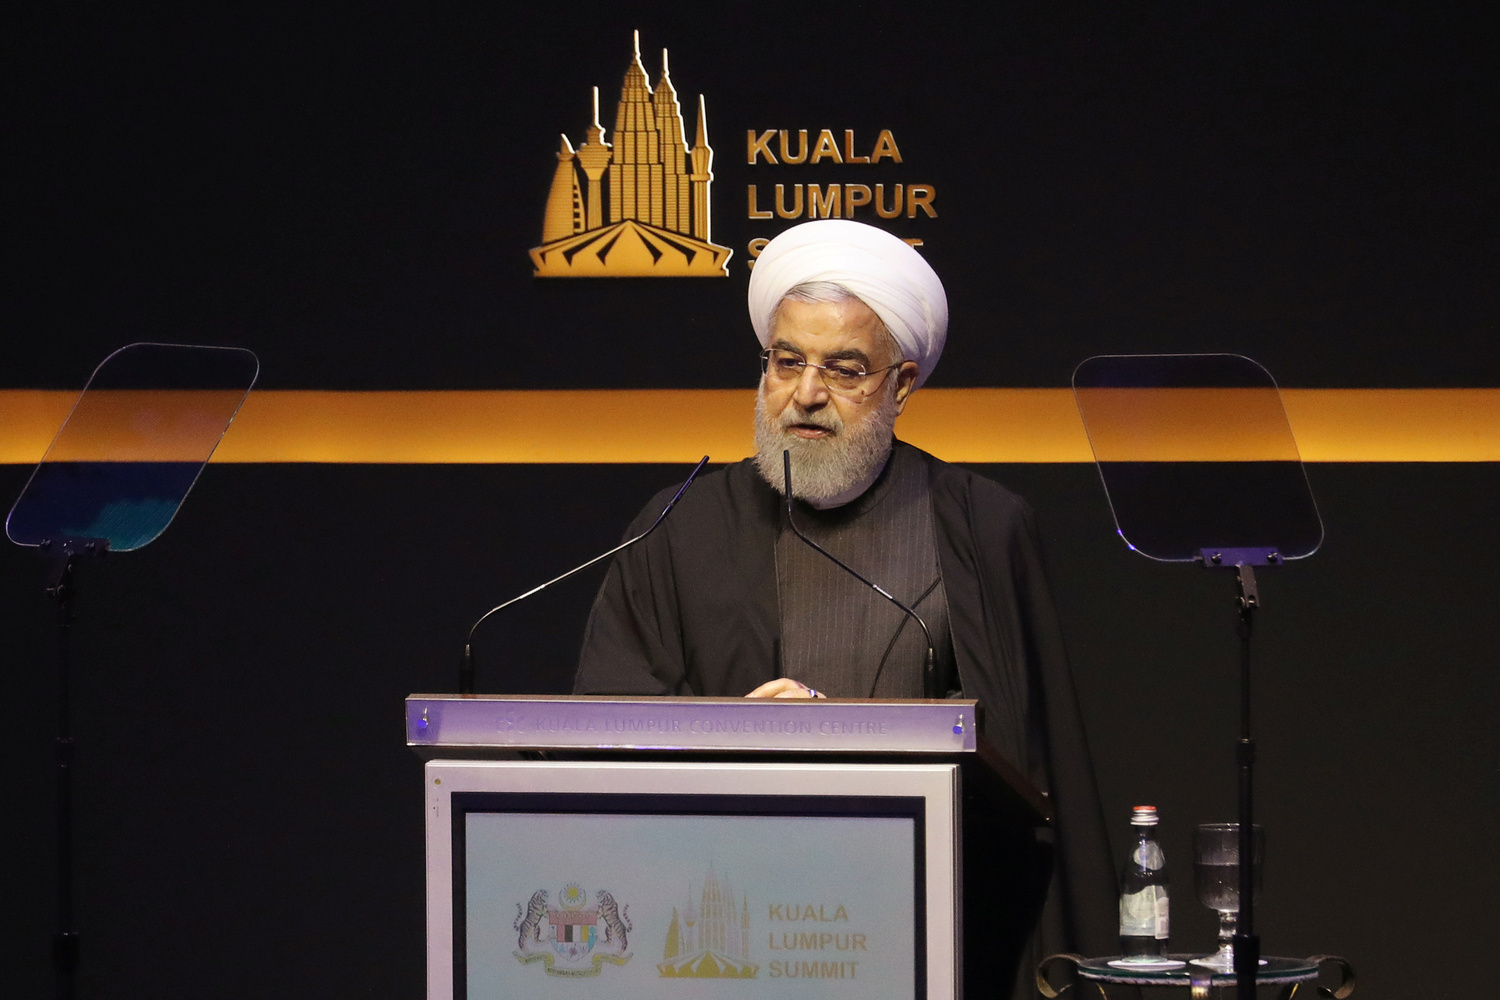 Il Presidente iraniano Hassan Rouhani interviene durante il vertice di Kuala Lumpur a Kuala Lumpur, Malesia, 19 dicembre 2019. REUTERS/Lim Huey Teng